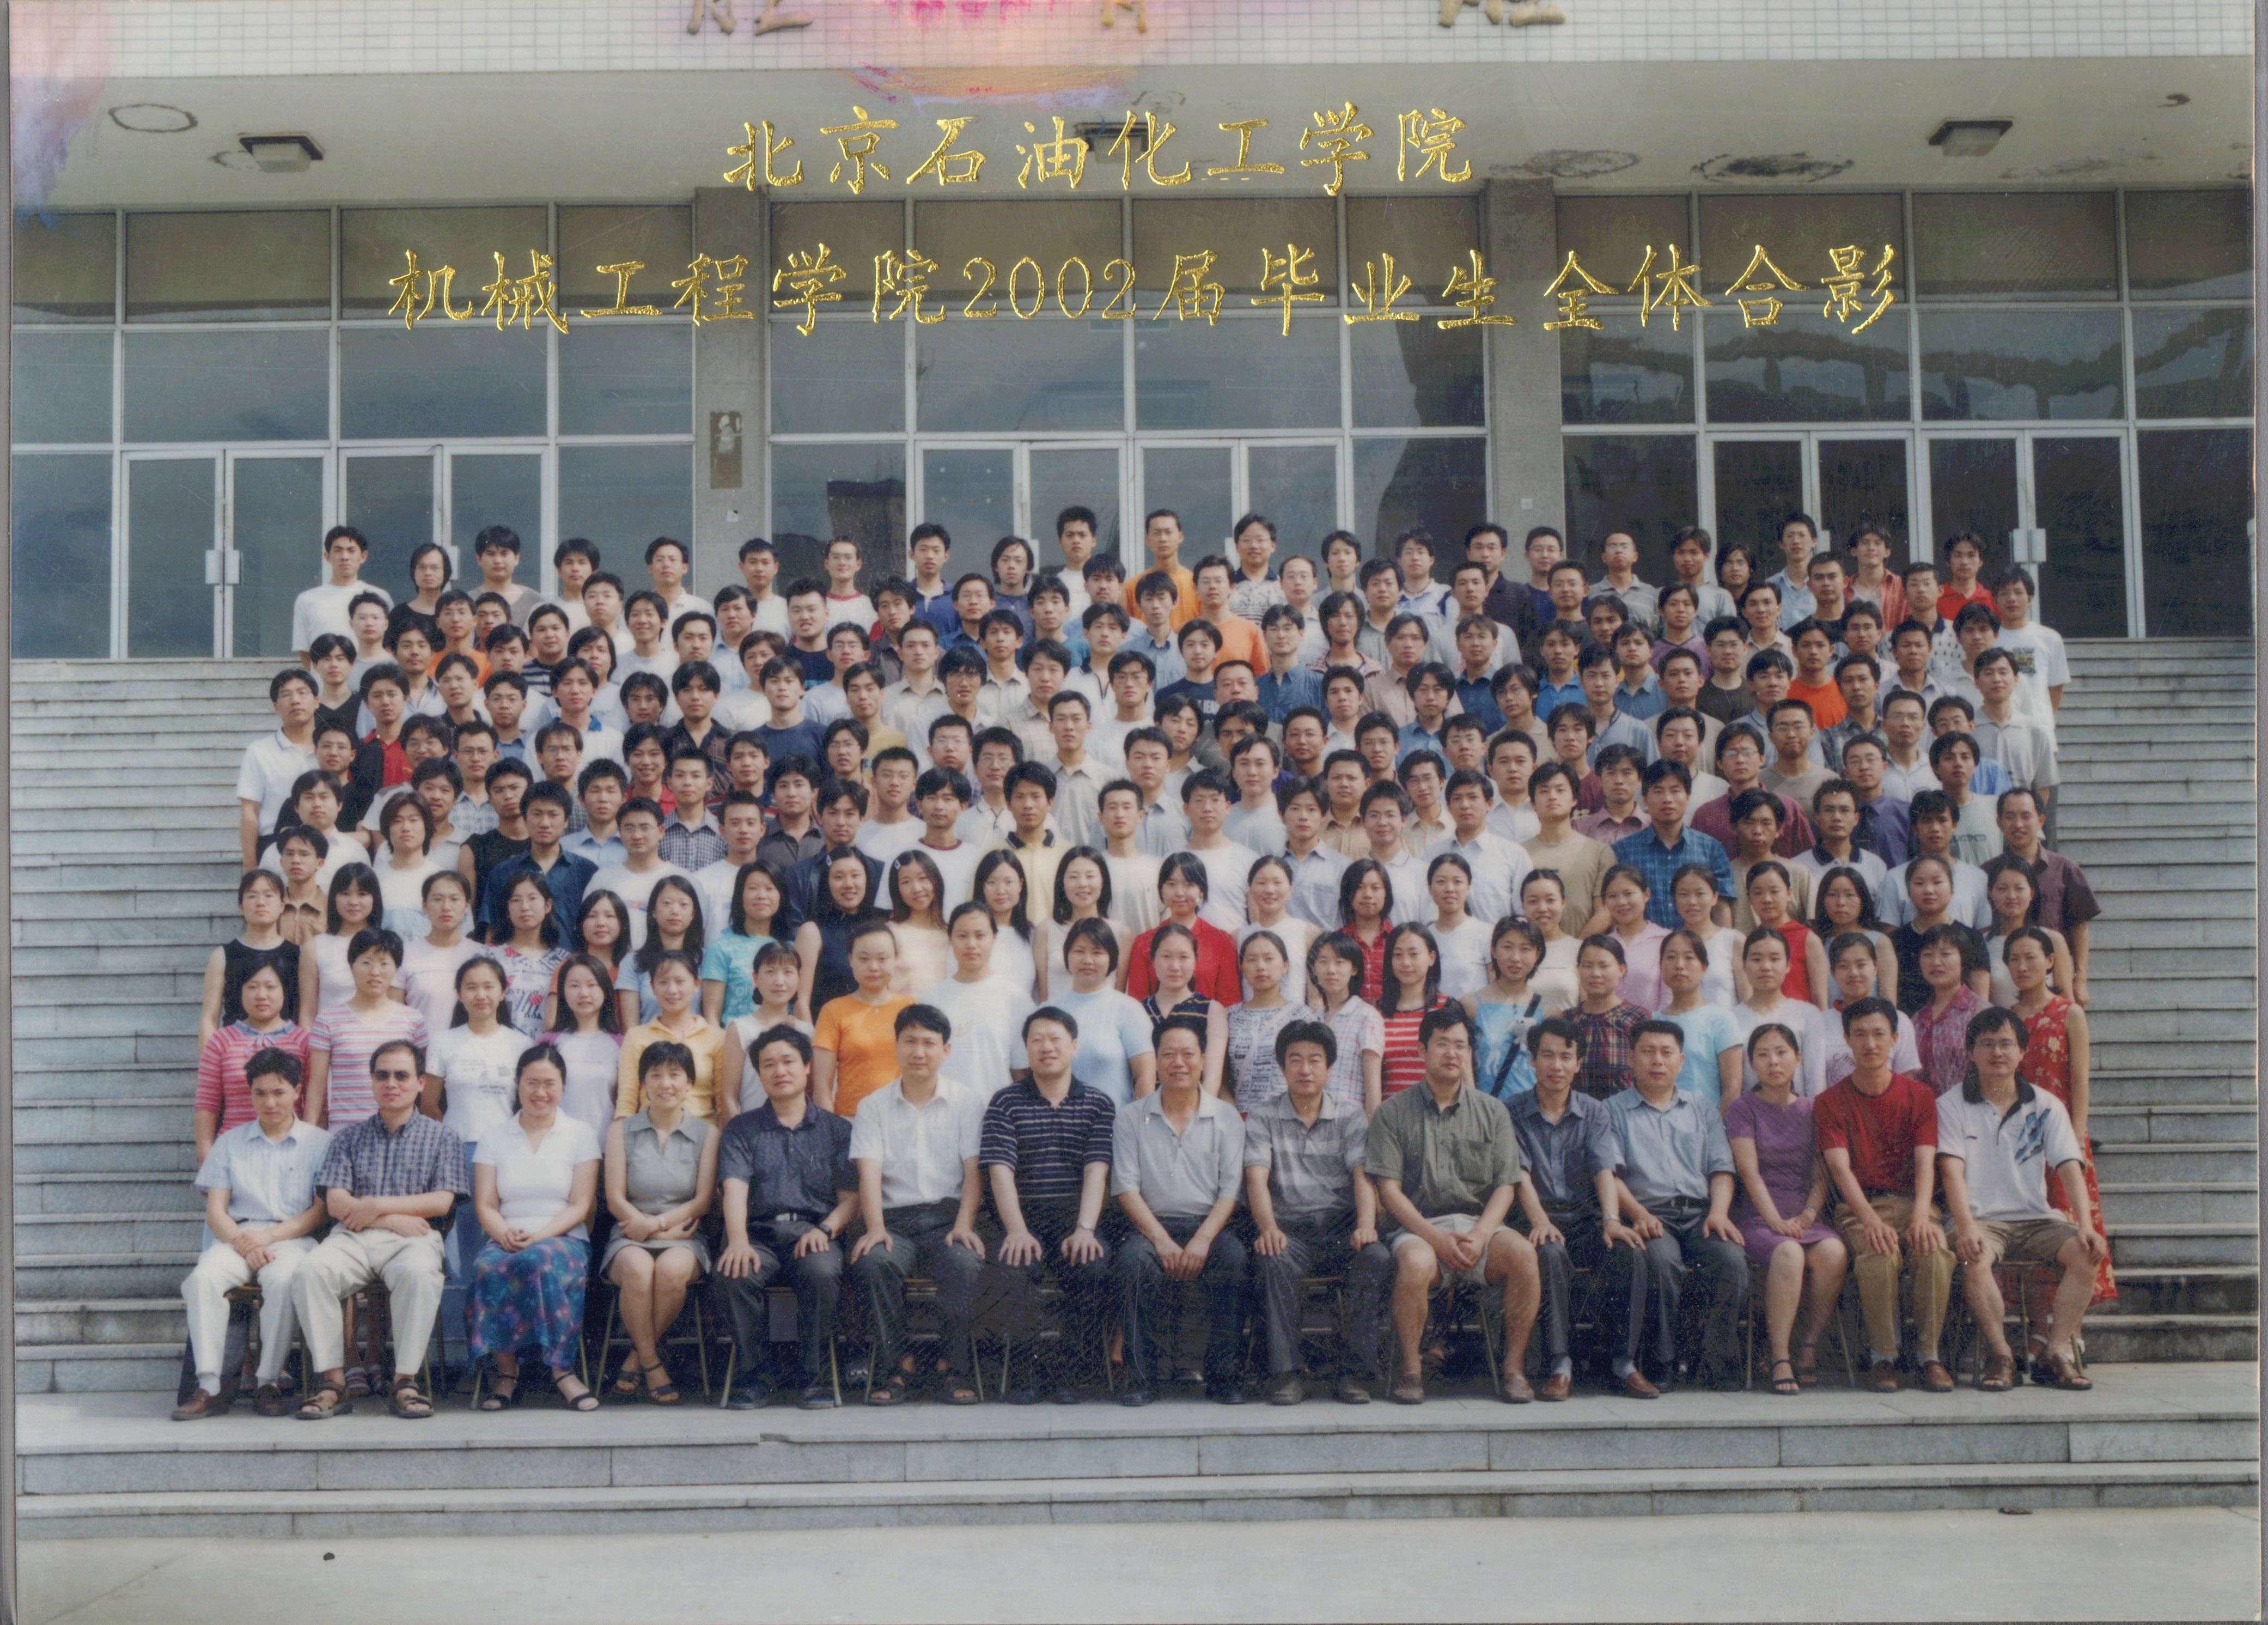 大发dafa888手机经典版机械工程学院2002届毕业照-1.jpg